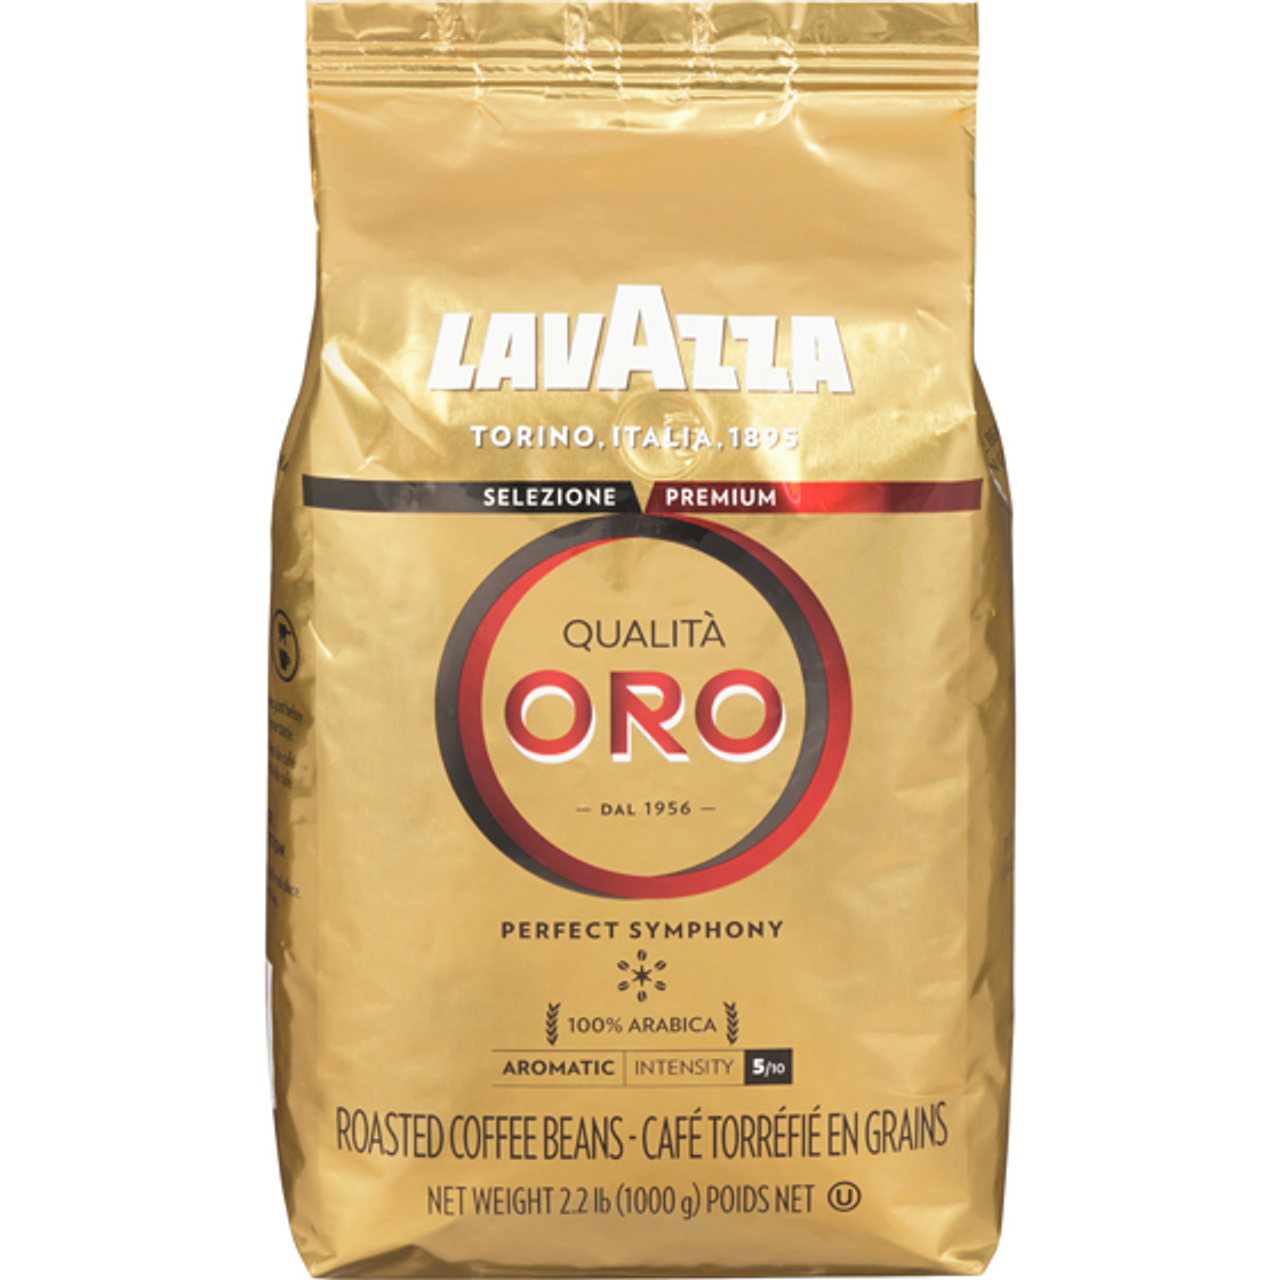 Lavazza Caffé Espresso 100% Premium Arabica Coffee, Whole Bean, 2.2 lbs